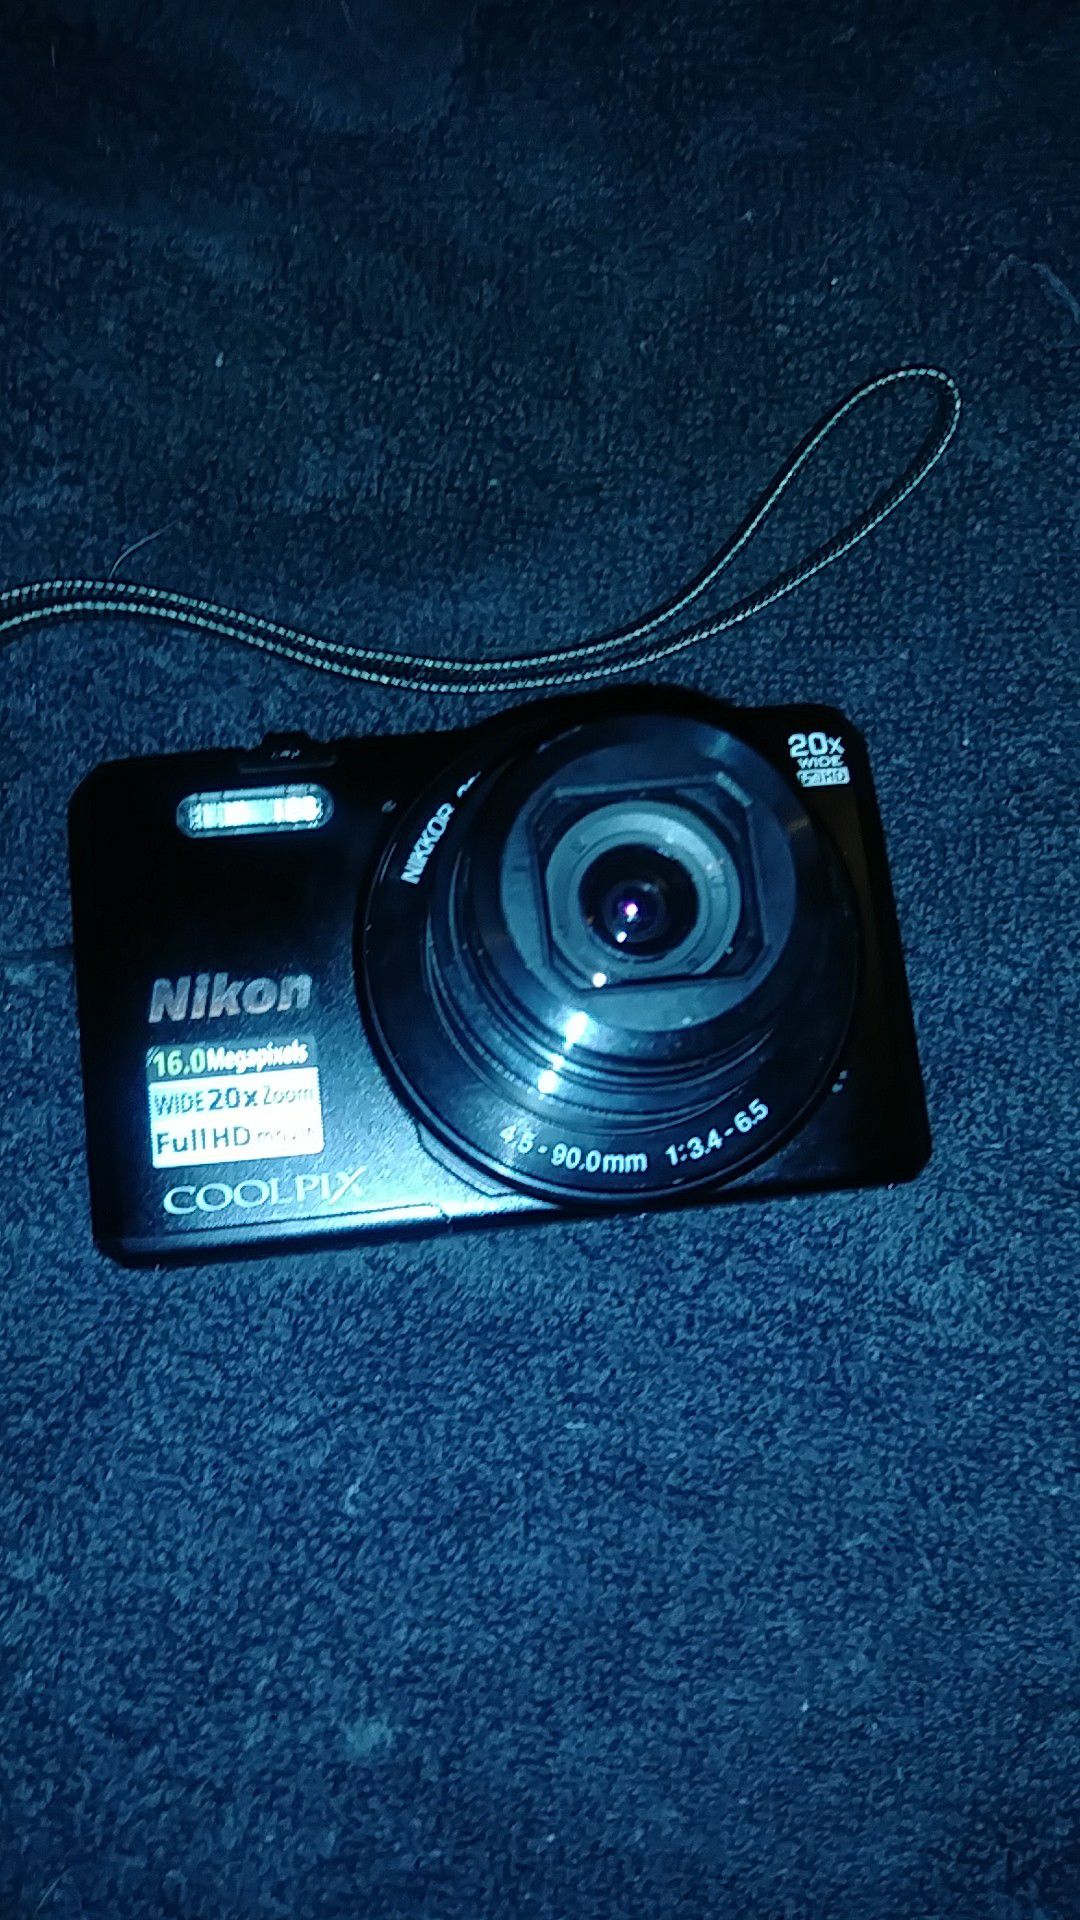 Nikon 16.0 S7000